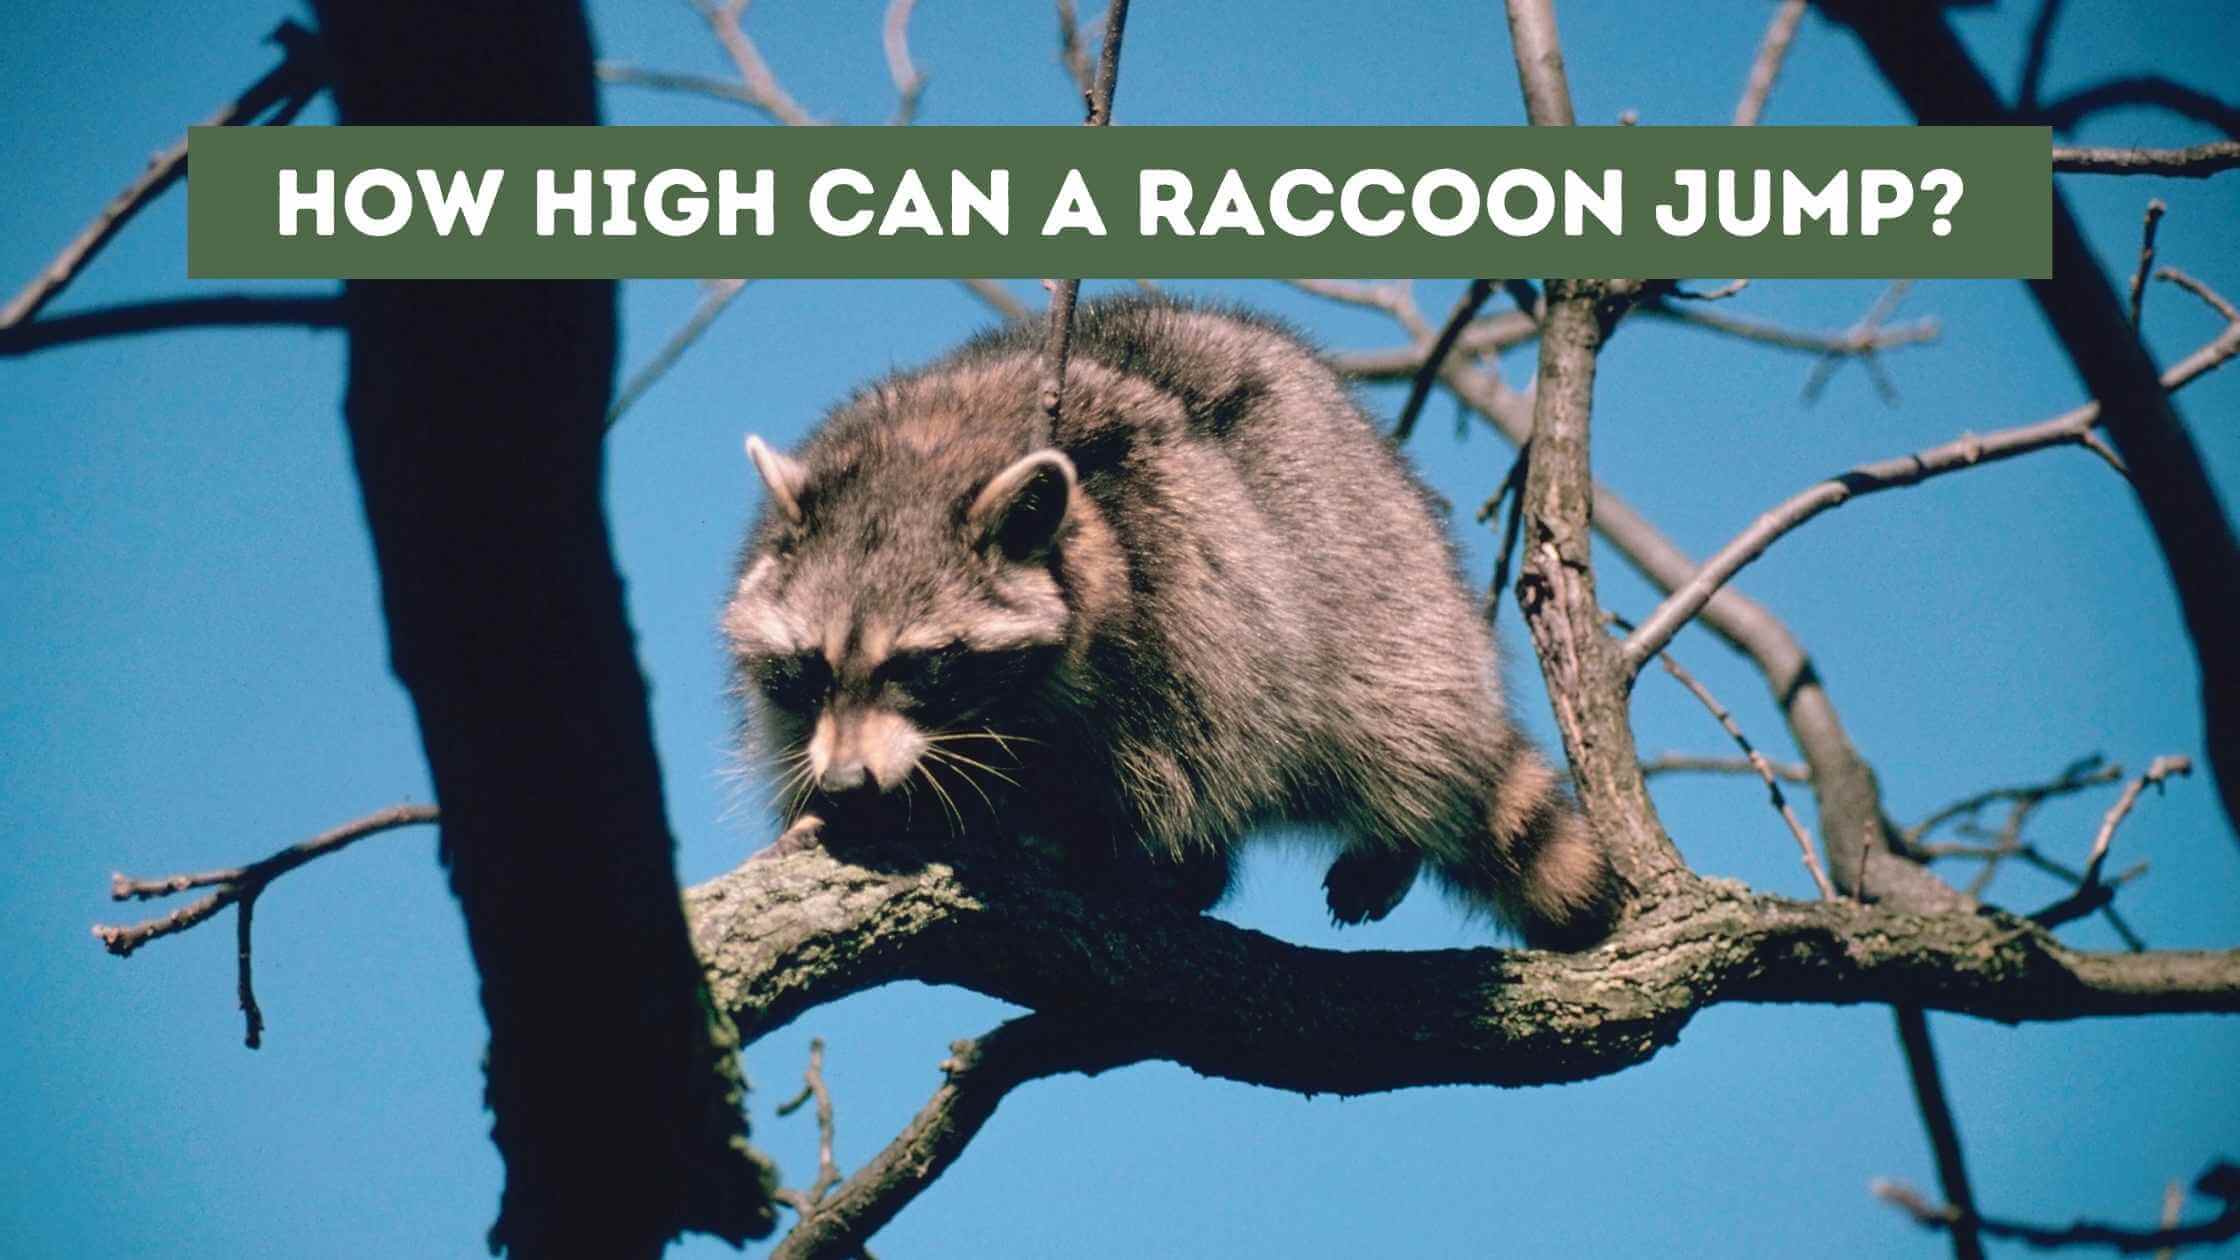 How High Can a Raccoon Jump